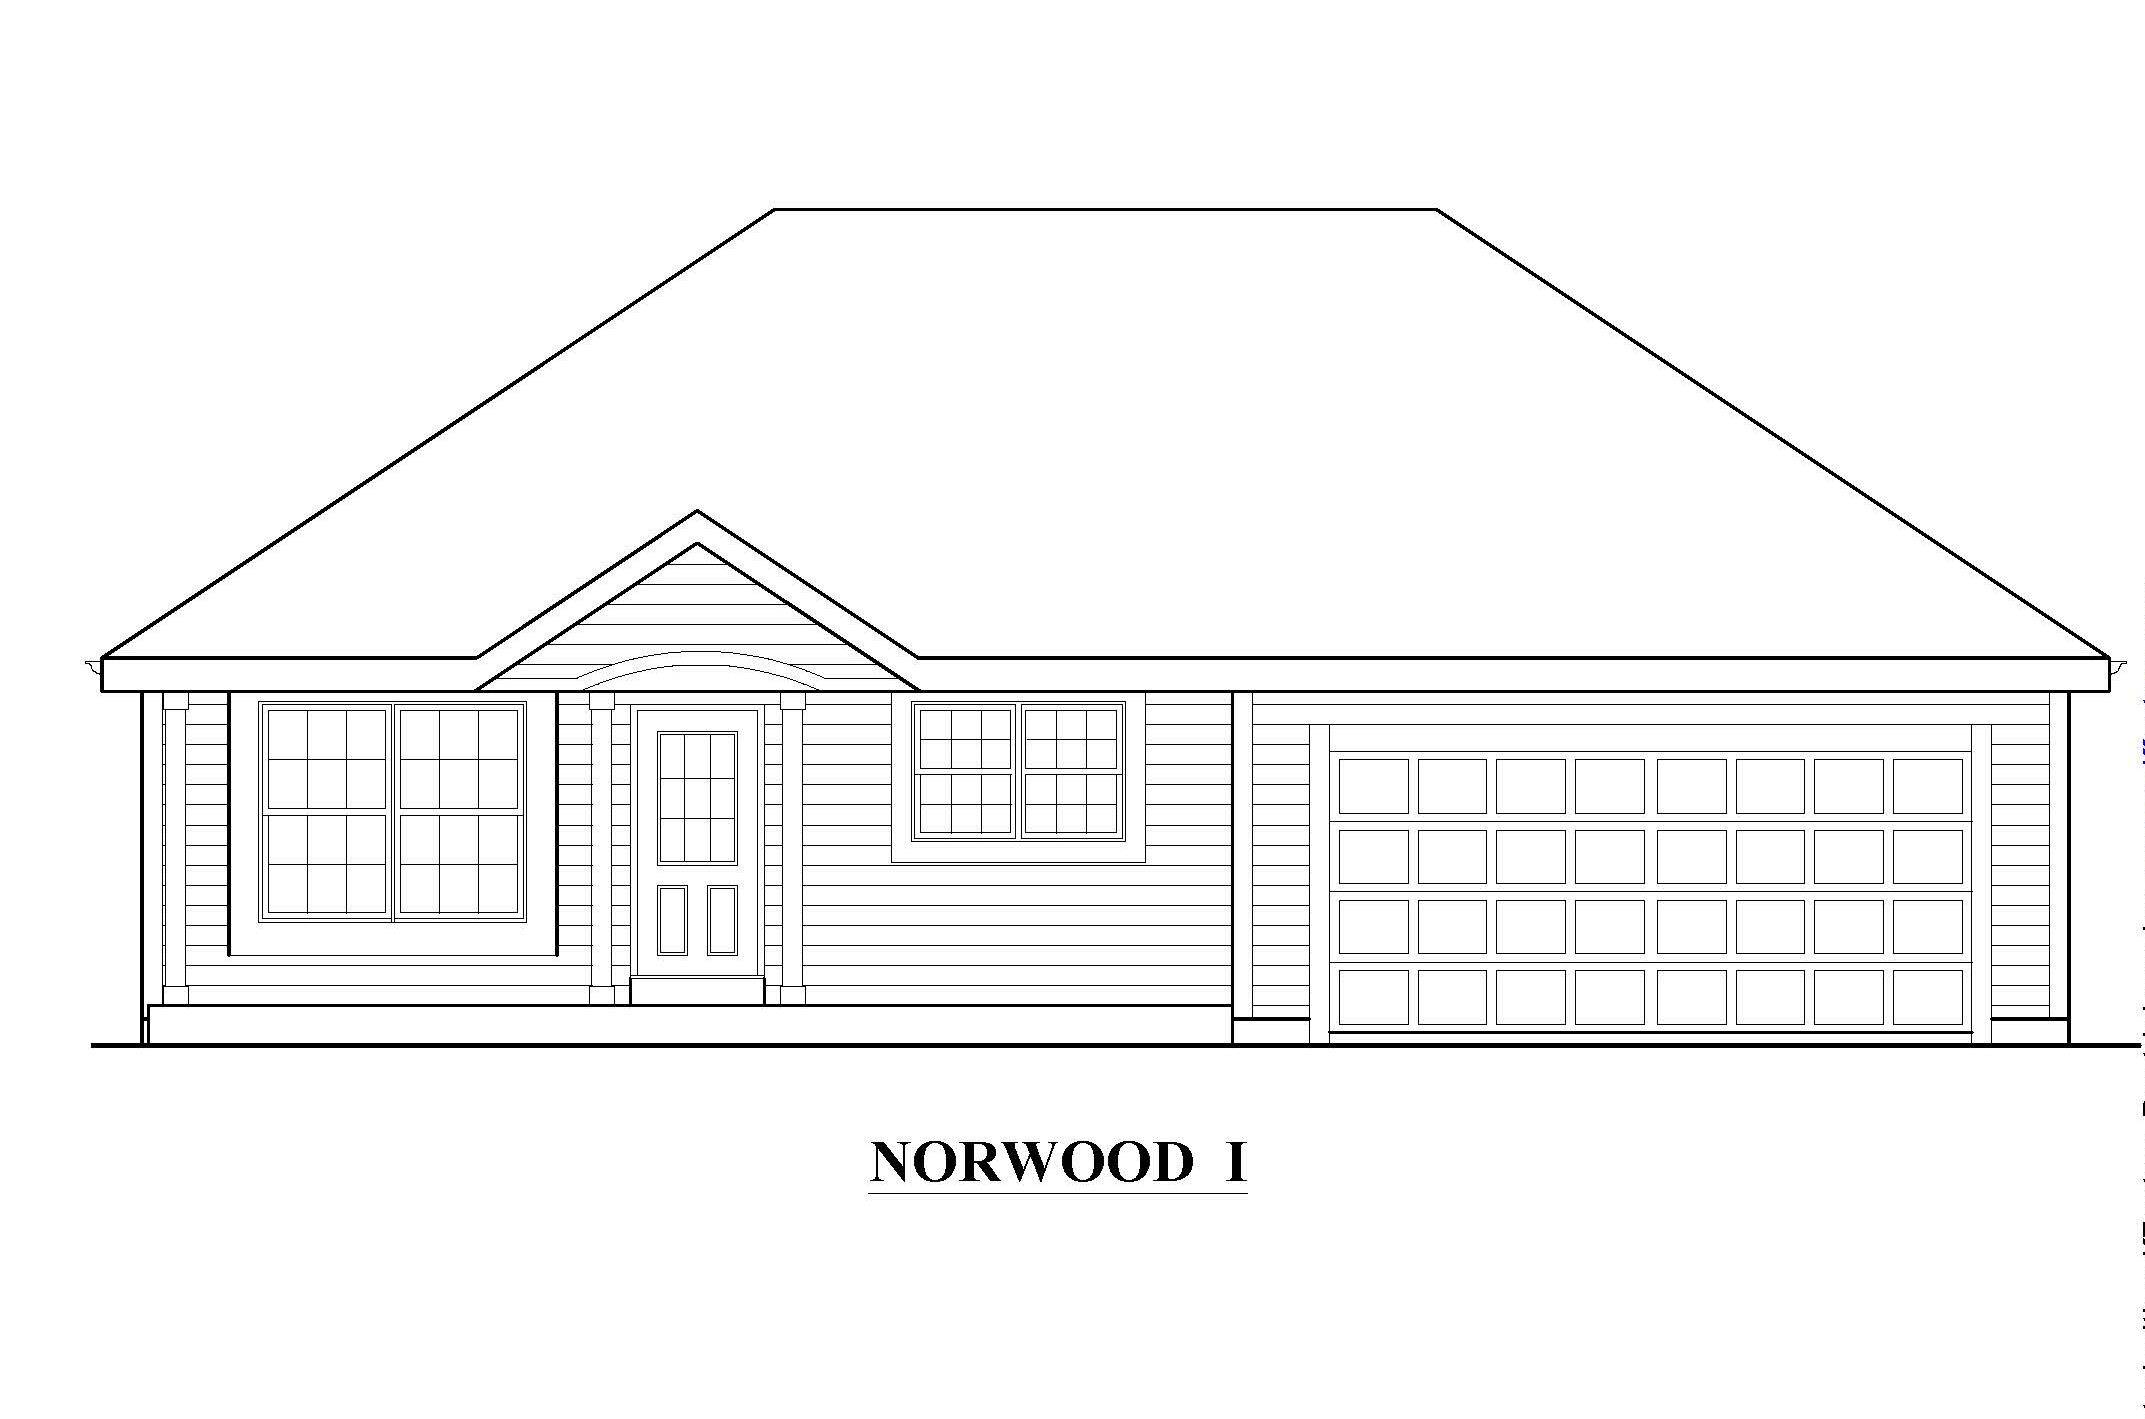 Norwood 1 External